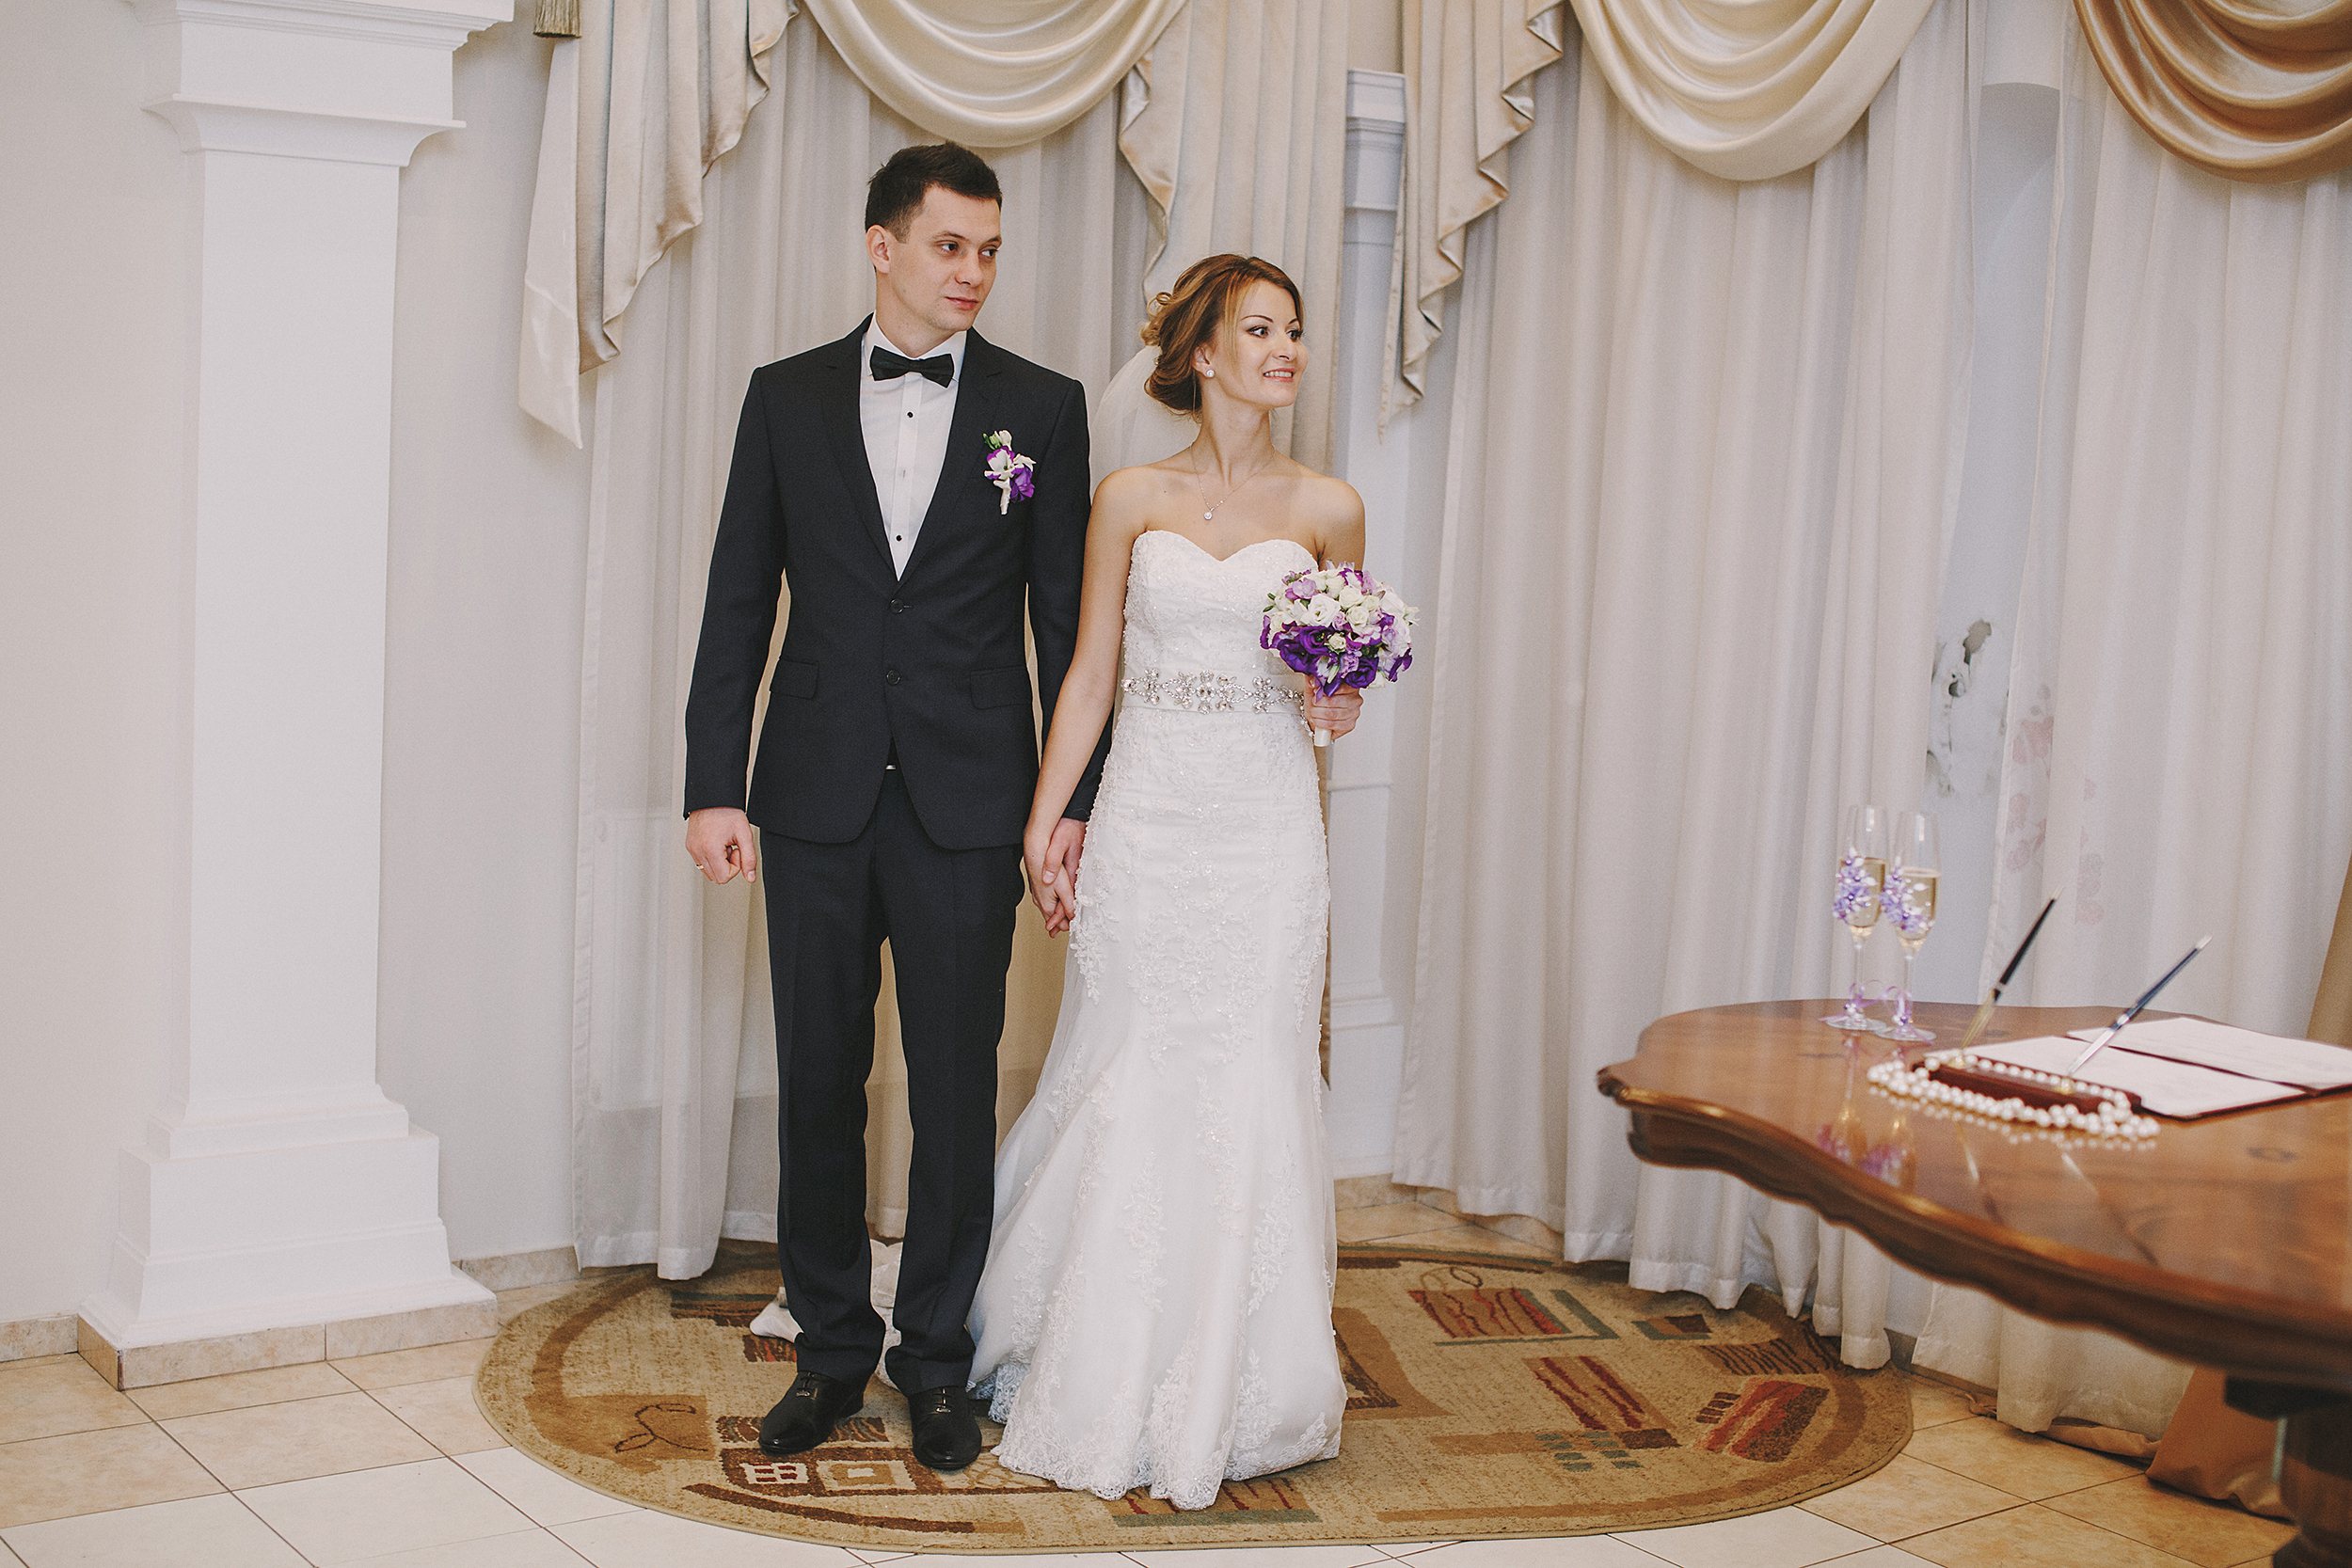 Recién casados | Foto: Shutterstock